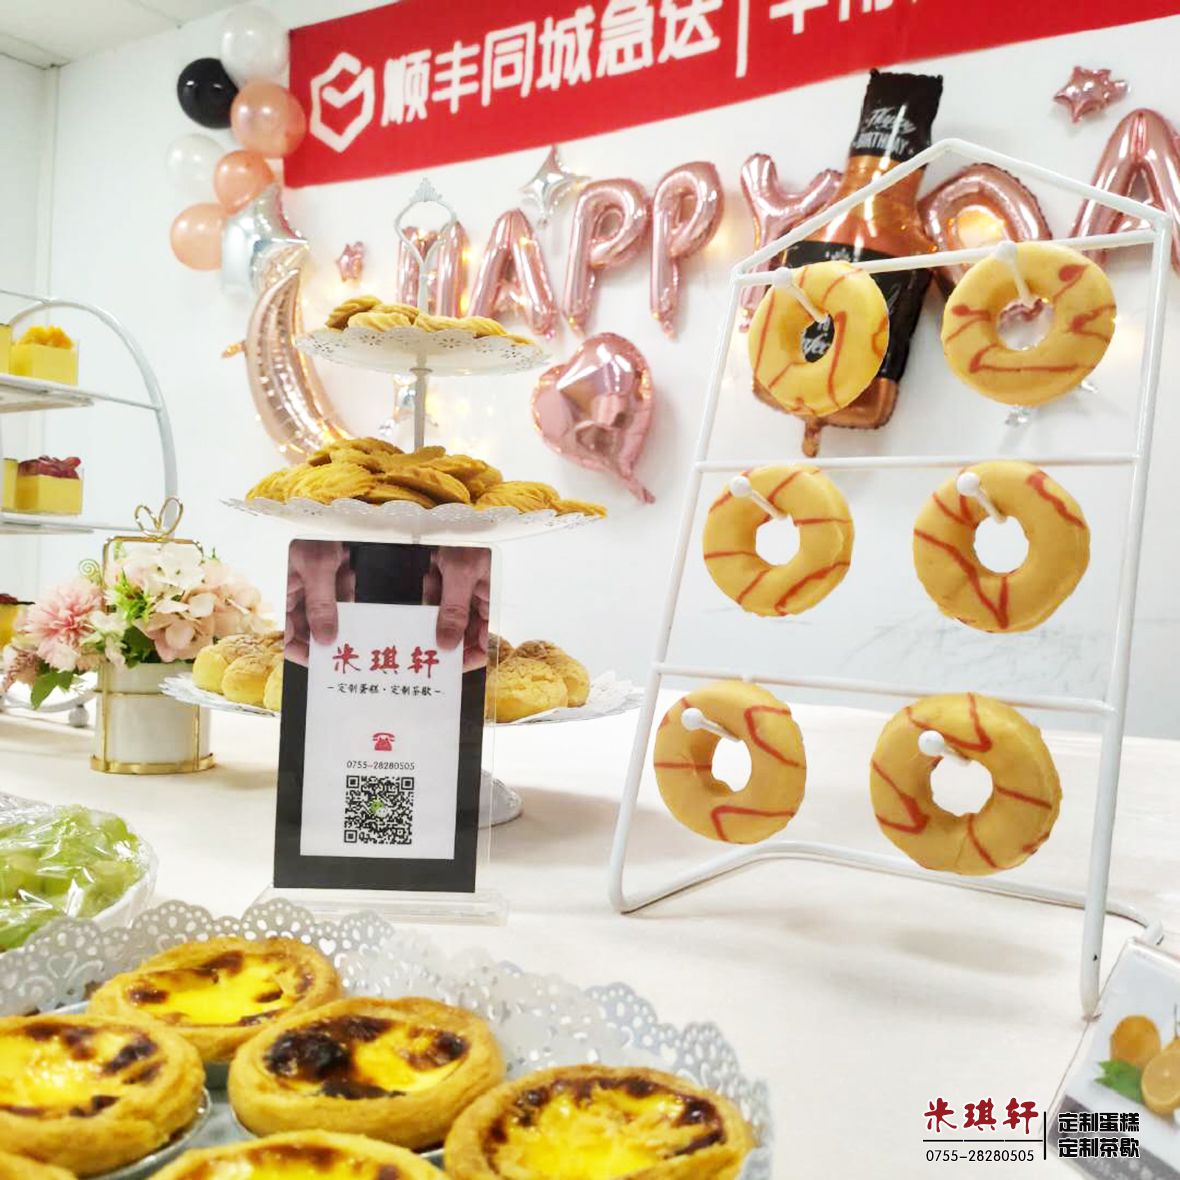 为顺丰同城急送华南大区提供的下午茶歇甜品台(图4)